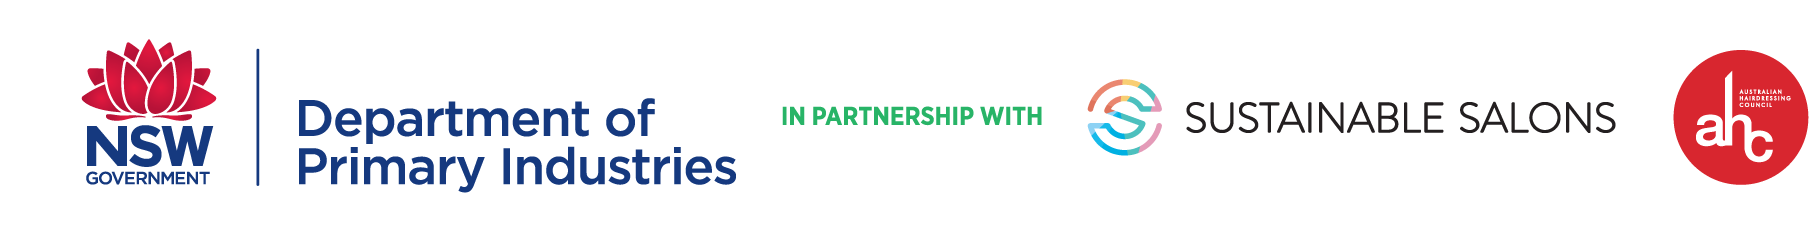 sustainable salons partnership with DPI logo